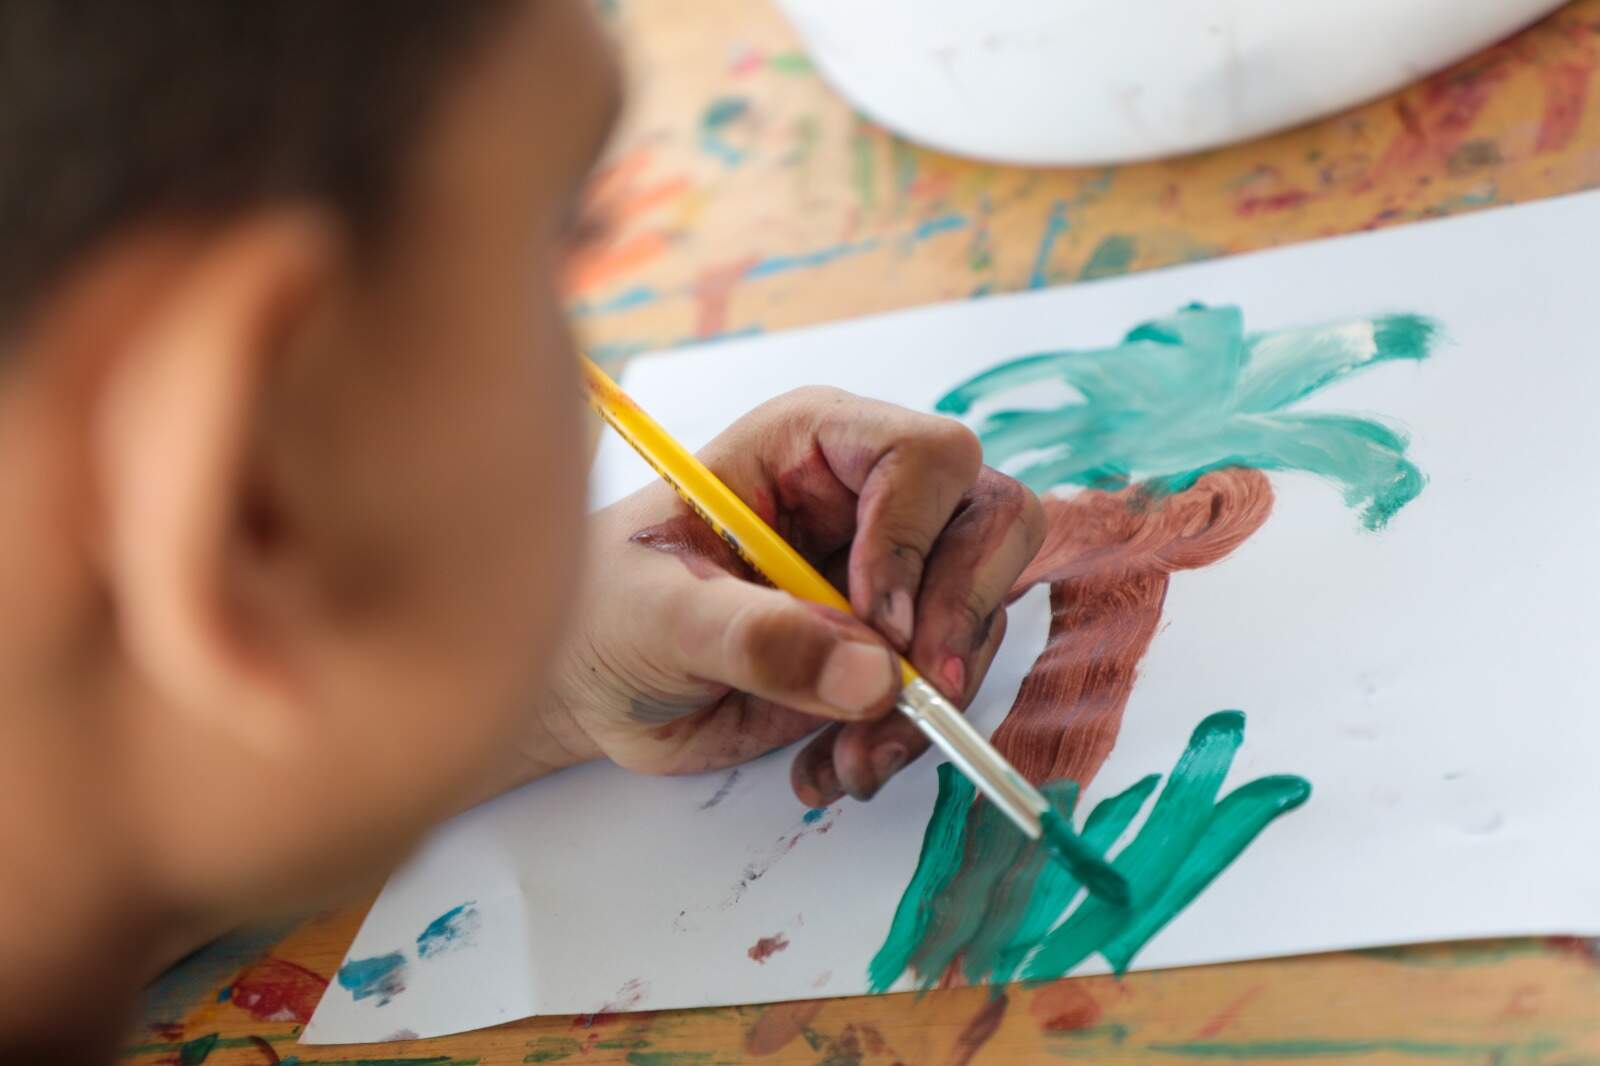 uma criança, que aparece desfocada na imagem, pinta um papel em branco. O desenho revela um coqueiro.